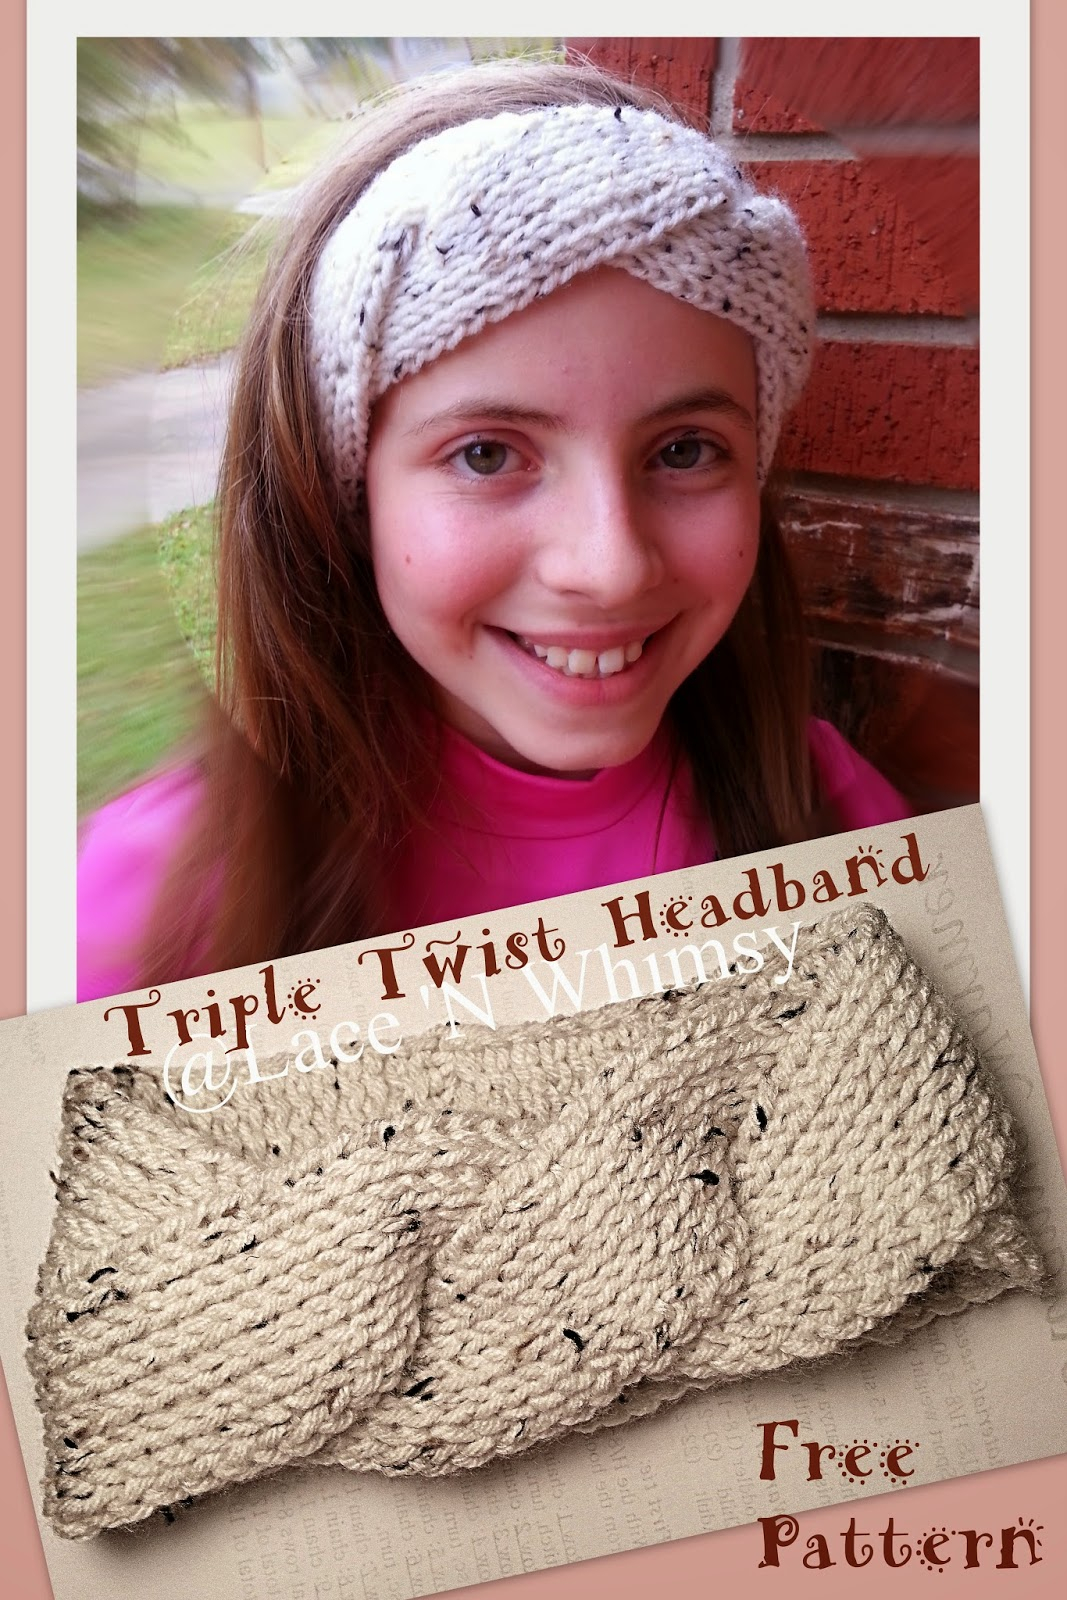 Crochet Headbands Ear Warmers Patterns Free Lace And Whimsy Triple Twist Headband Ear Warmer Tunisian Knit